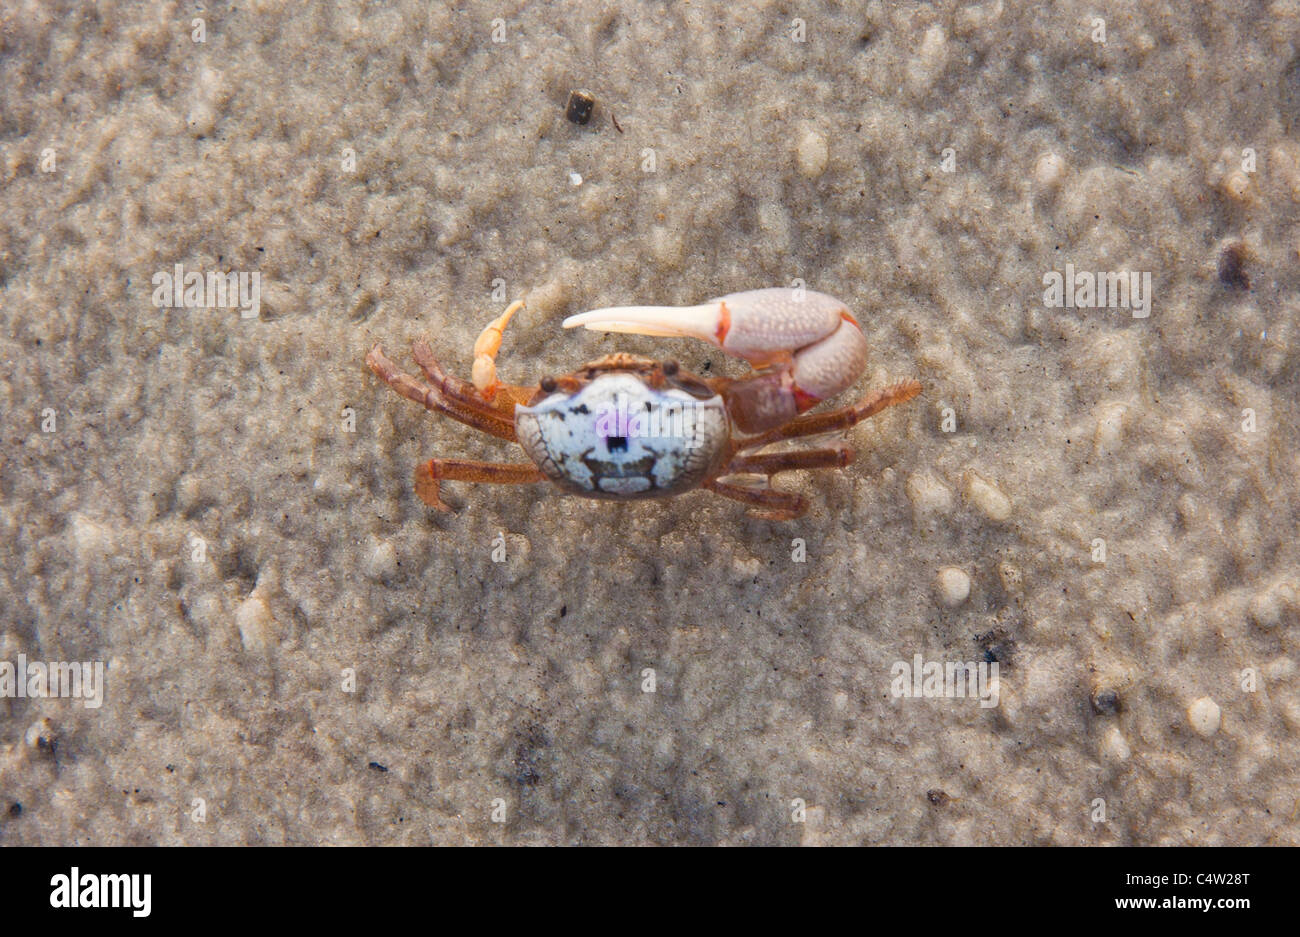 Fiddler crab (uca) at St Marks National Wildlife Refuge, Florida